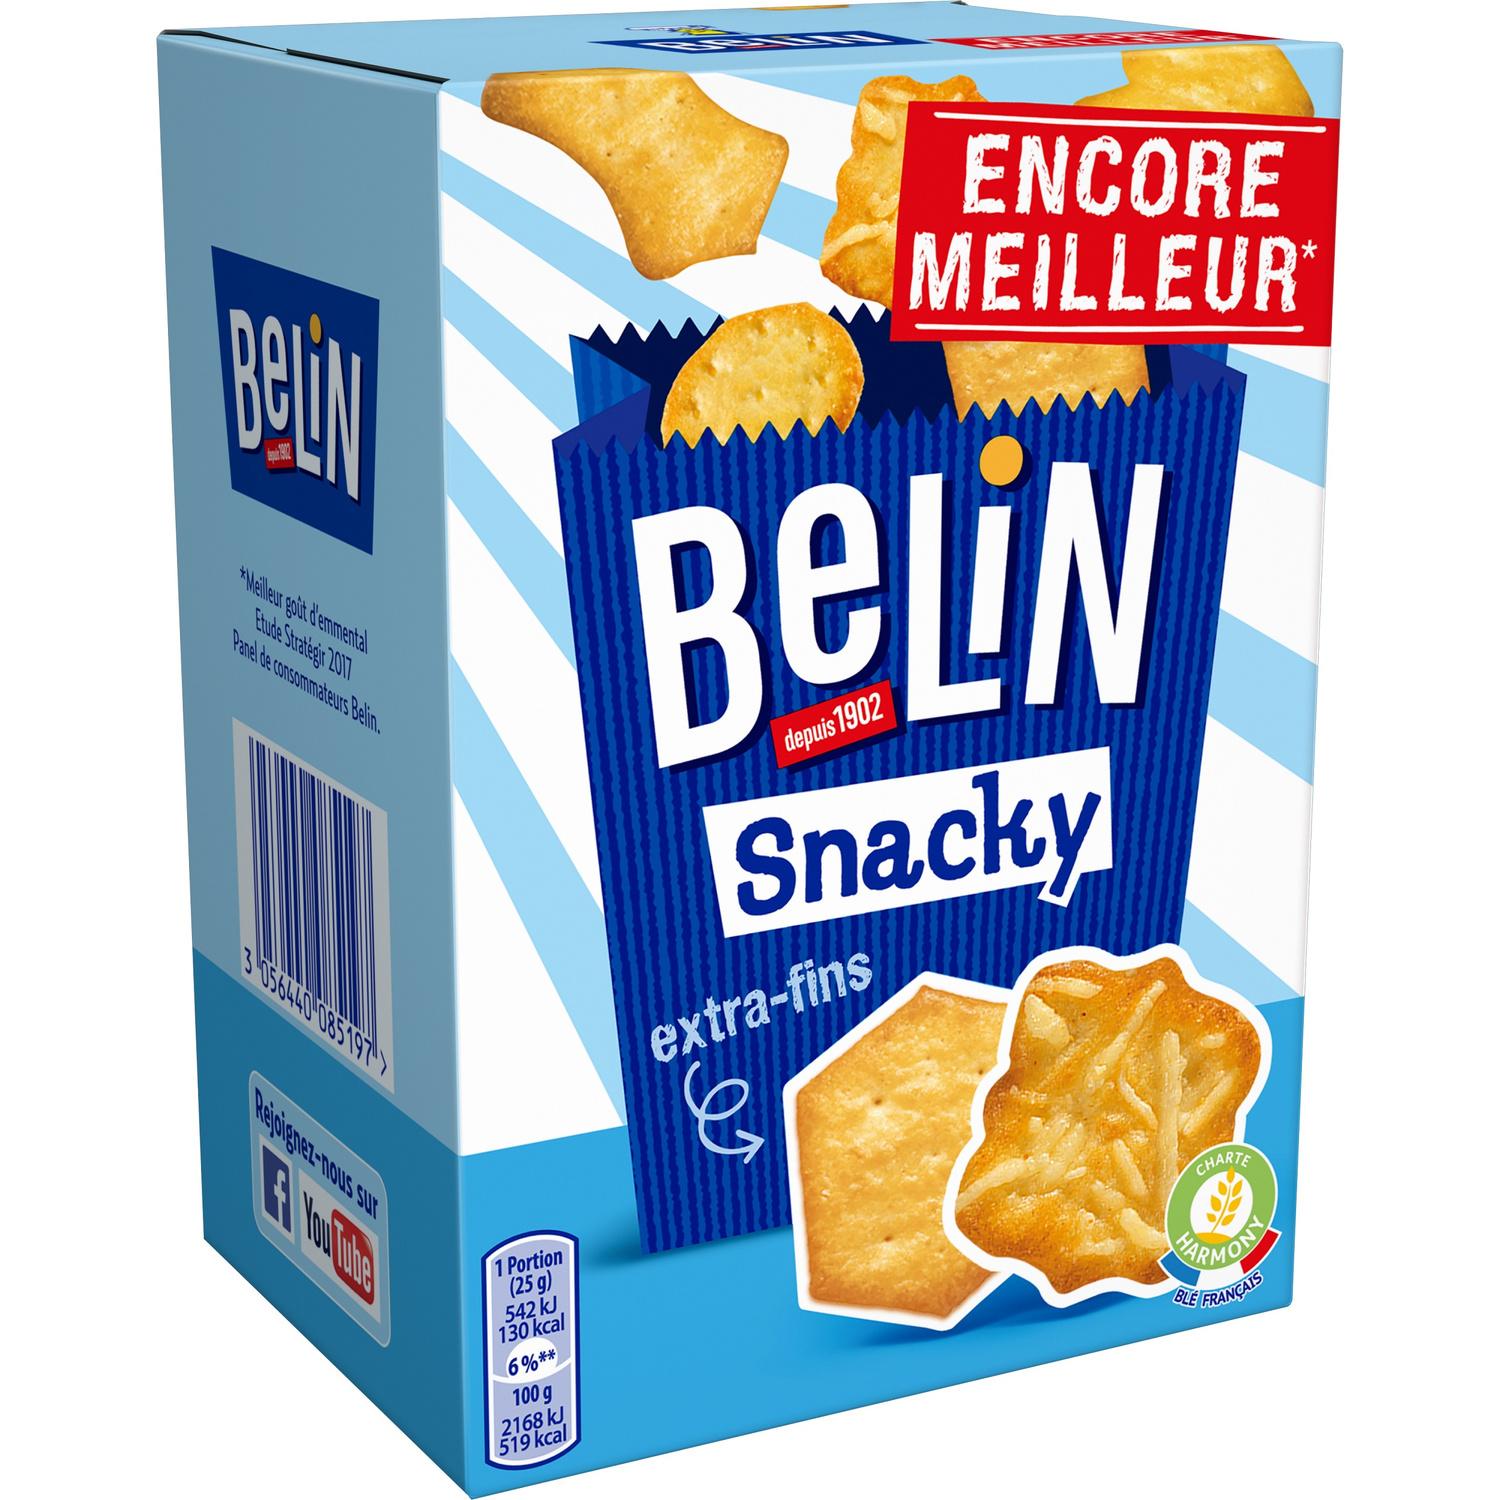 Assortiment de crackers Belin Tradition 720g pour machine à café